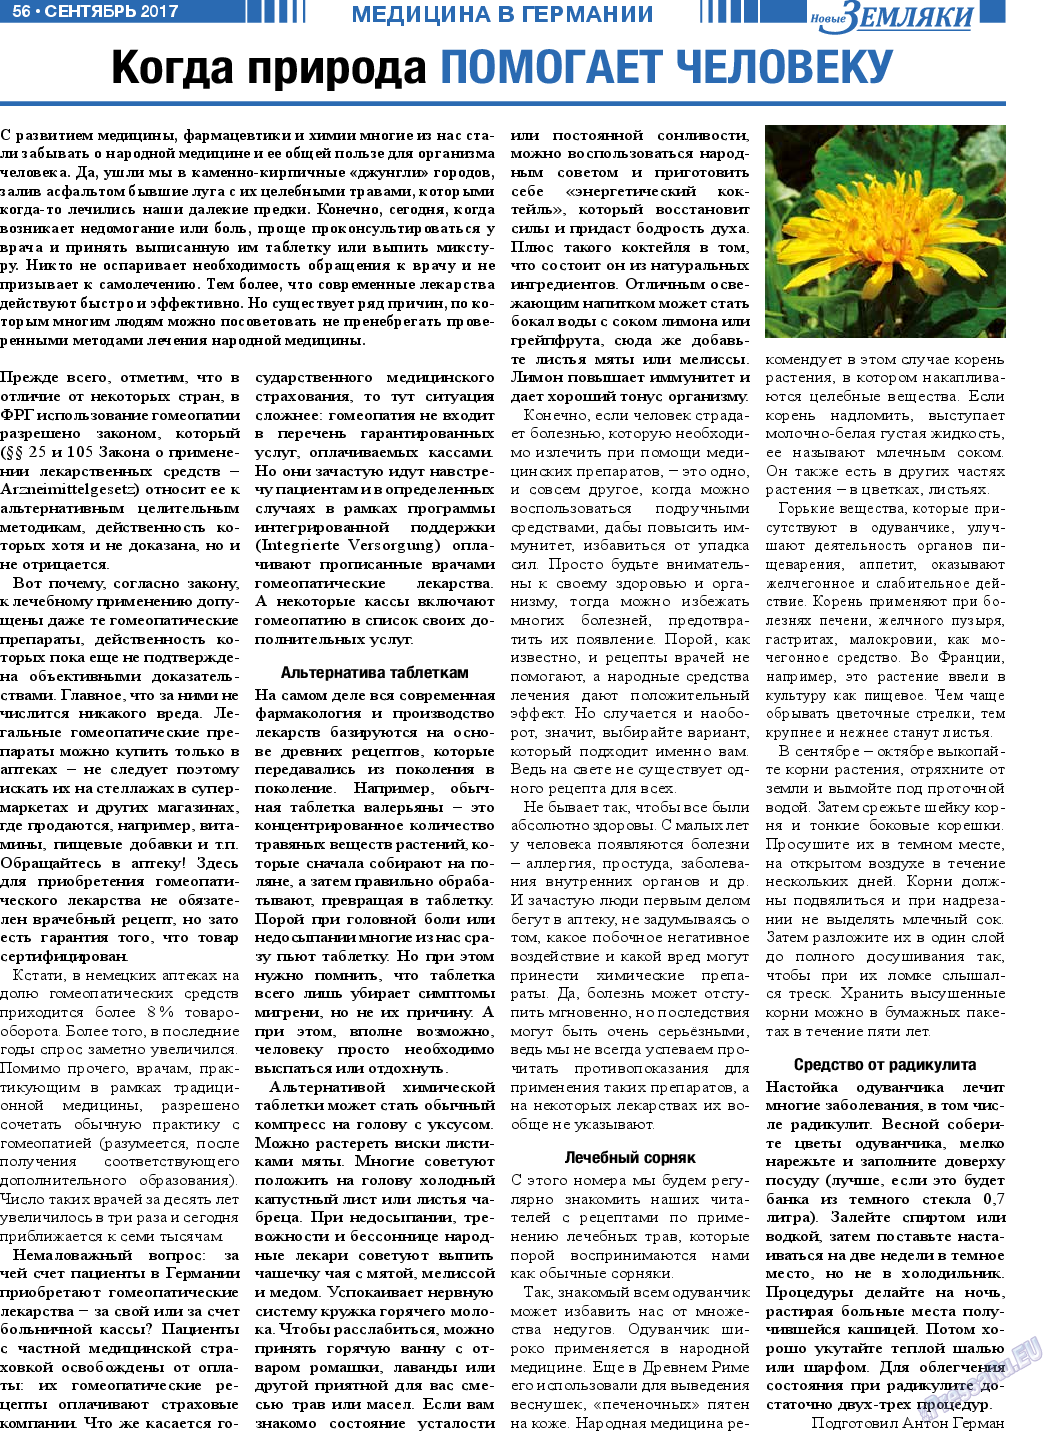 Новые Земляки, газета. 2017 №9 стр.56